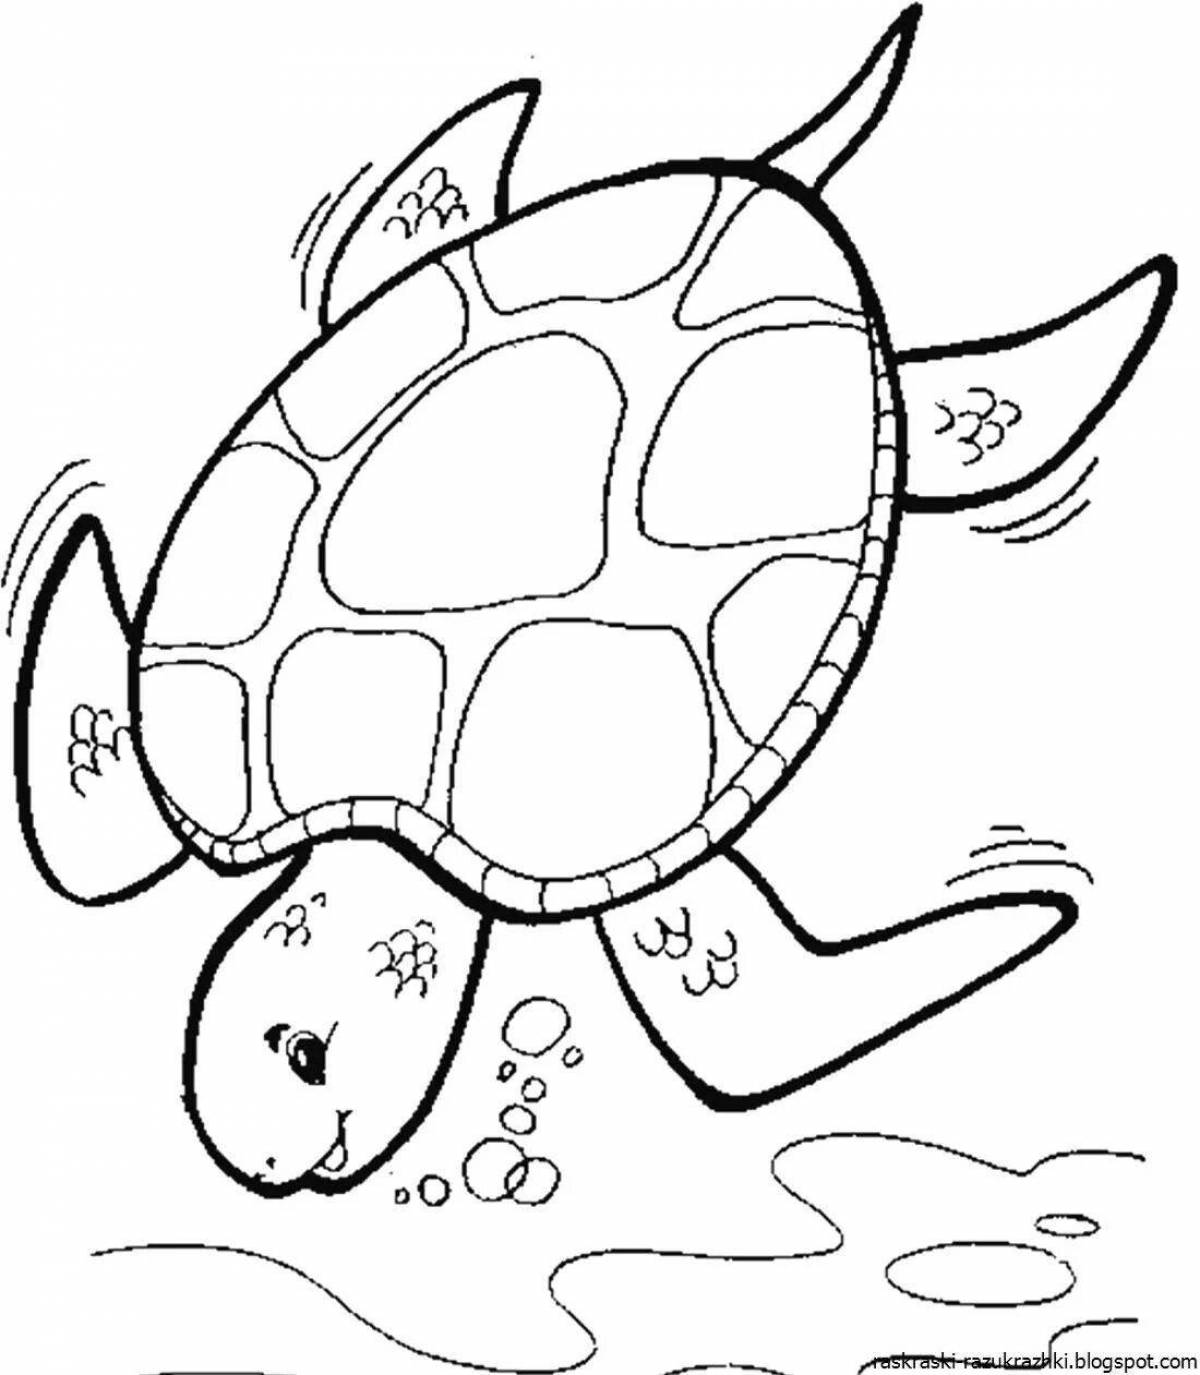 Милая морская черепаха раскраска для детей